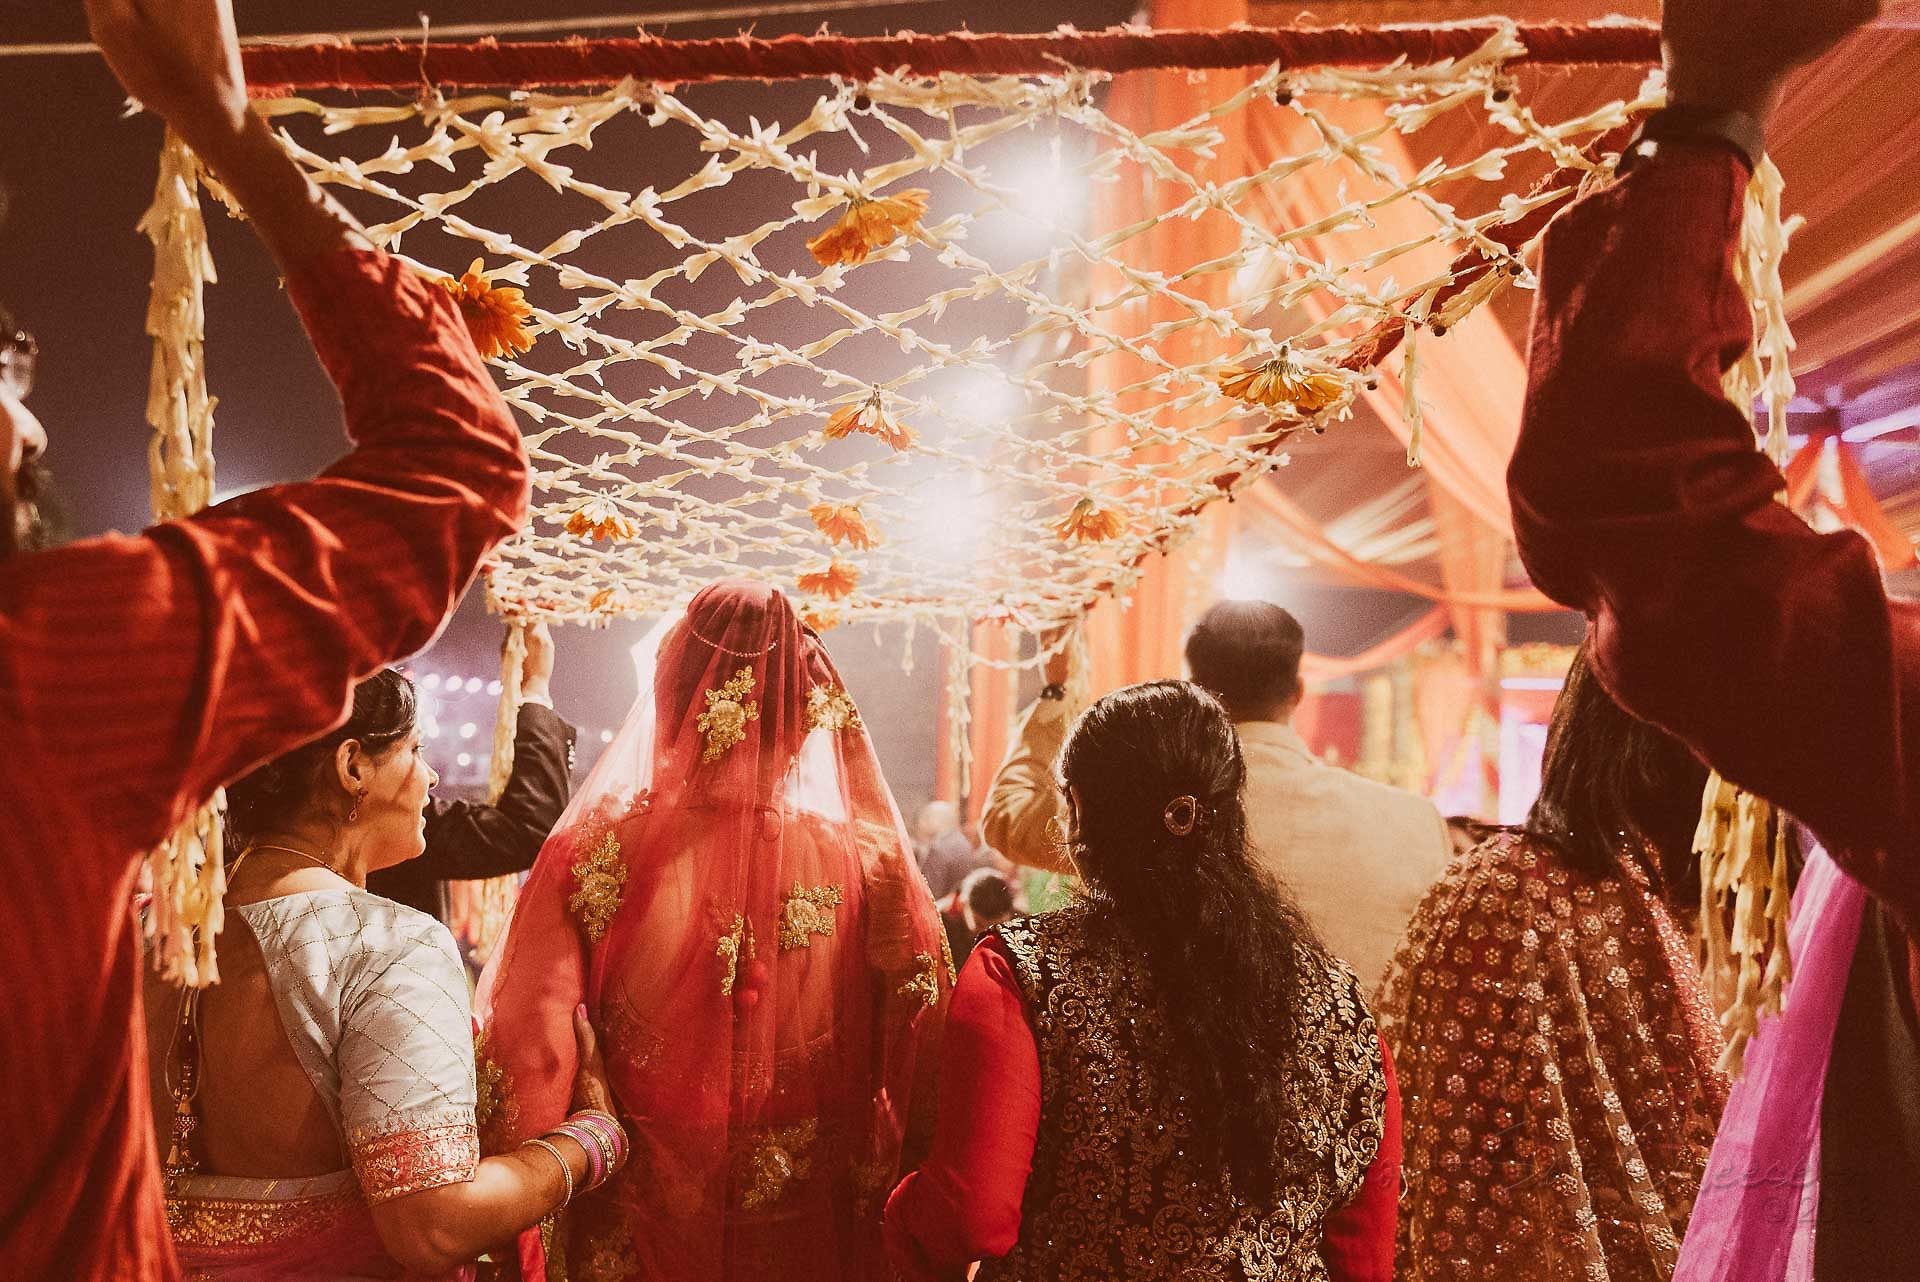 candid wedding photographer in india - Gaurav Gupta IDONTSAYCHEESE